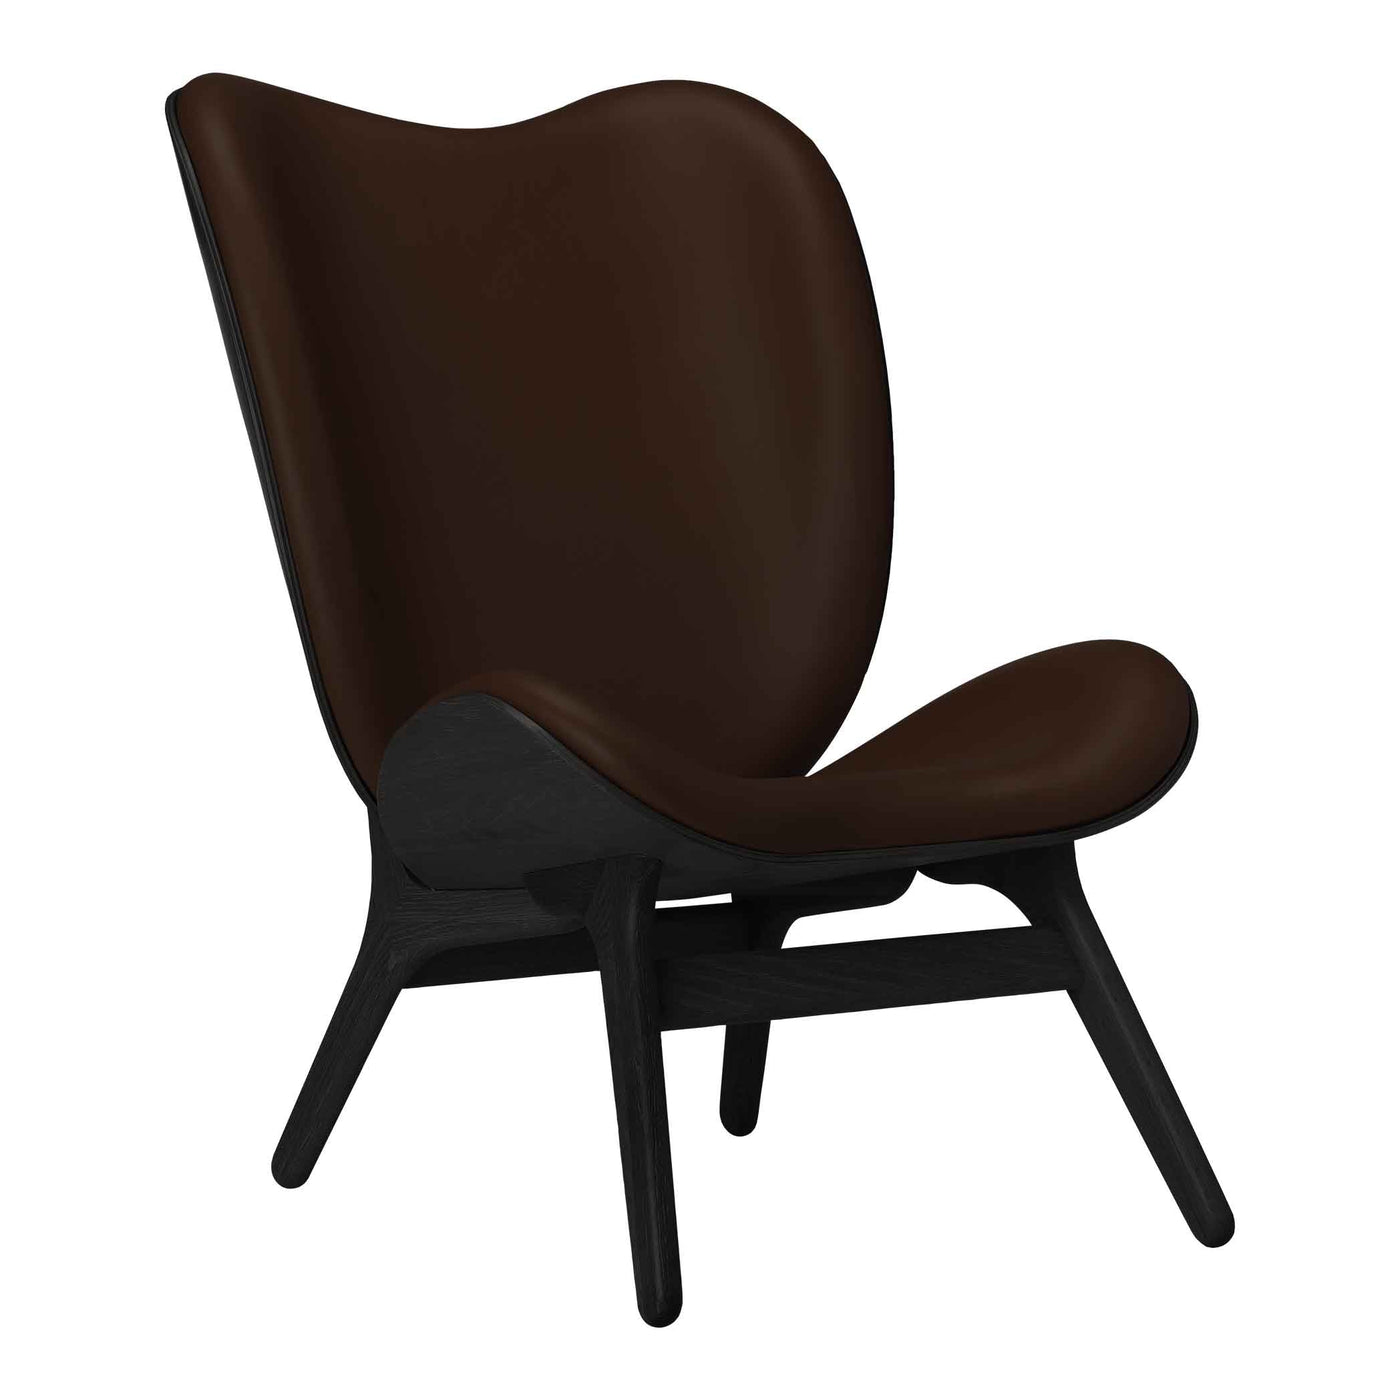 Umage A Conversation Piece Tall, fauteuil confortable avec dossier haut, en bois et tissu, chêne noir, cuir brun